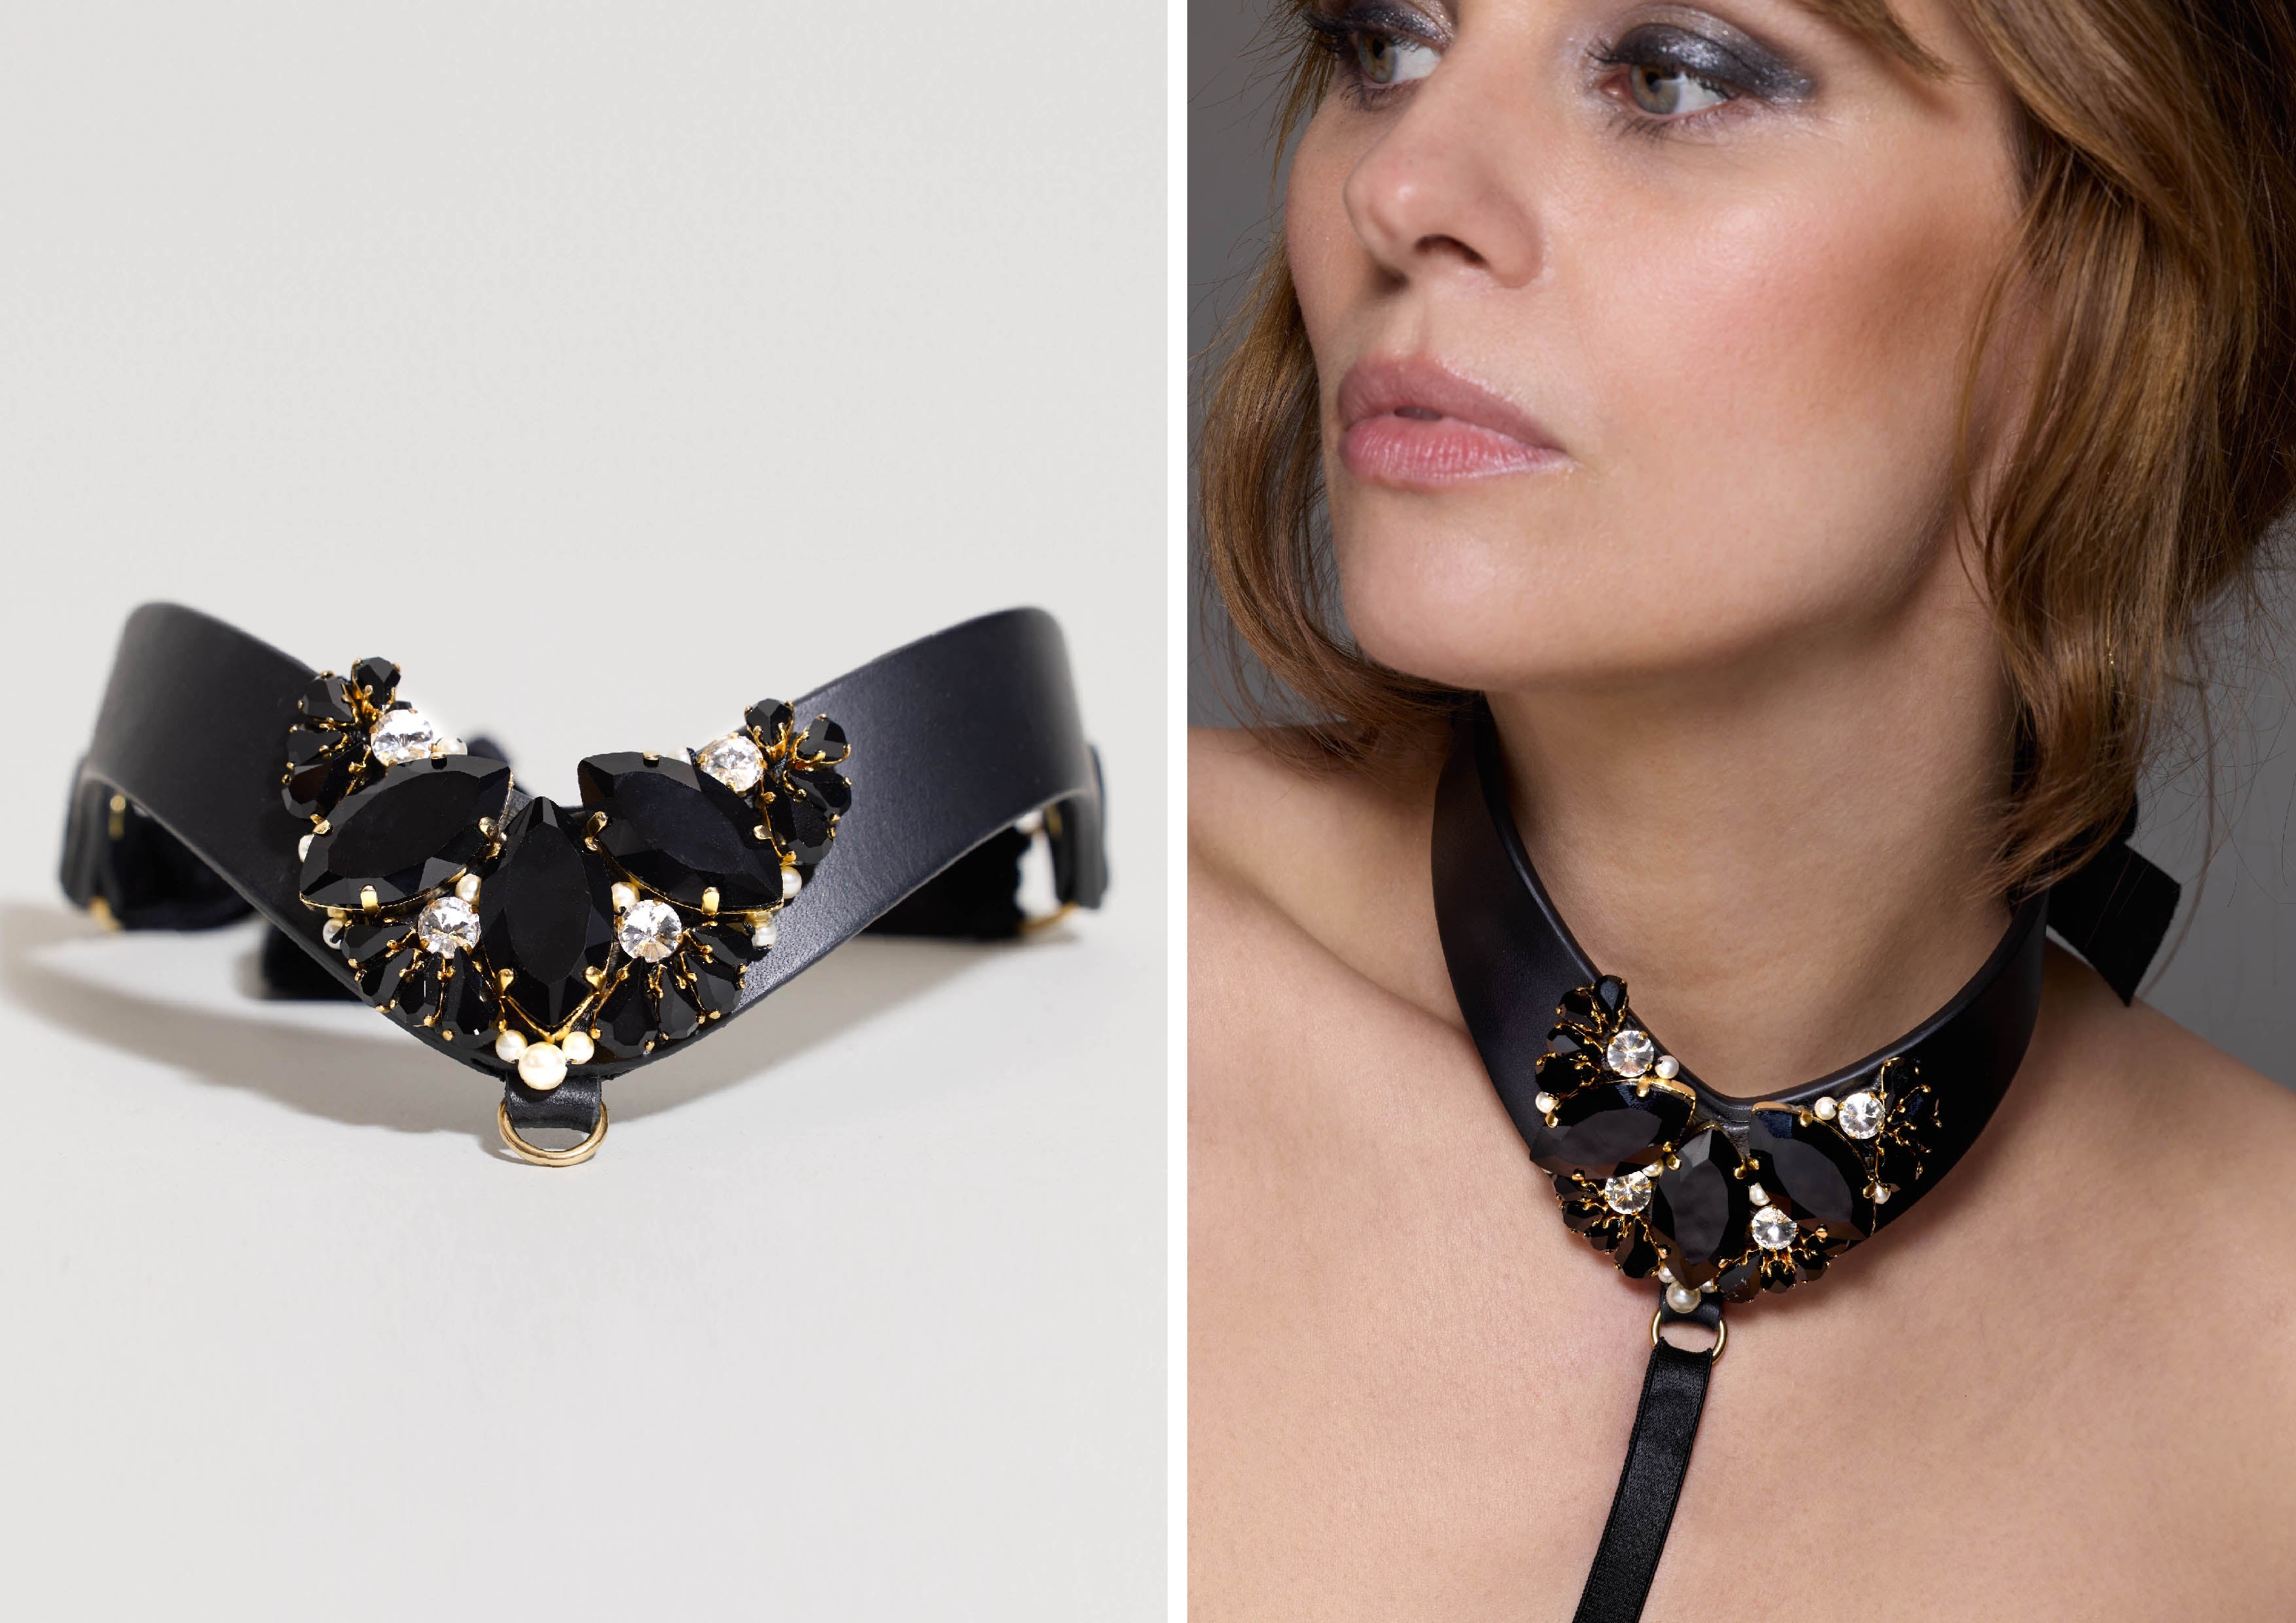 Tatu Couture X Ludovica Martire luxury leather collar accessories 